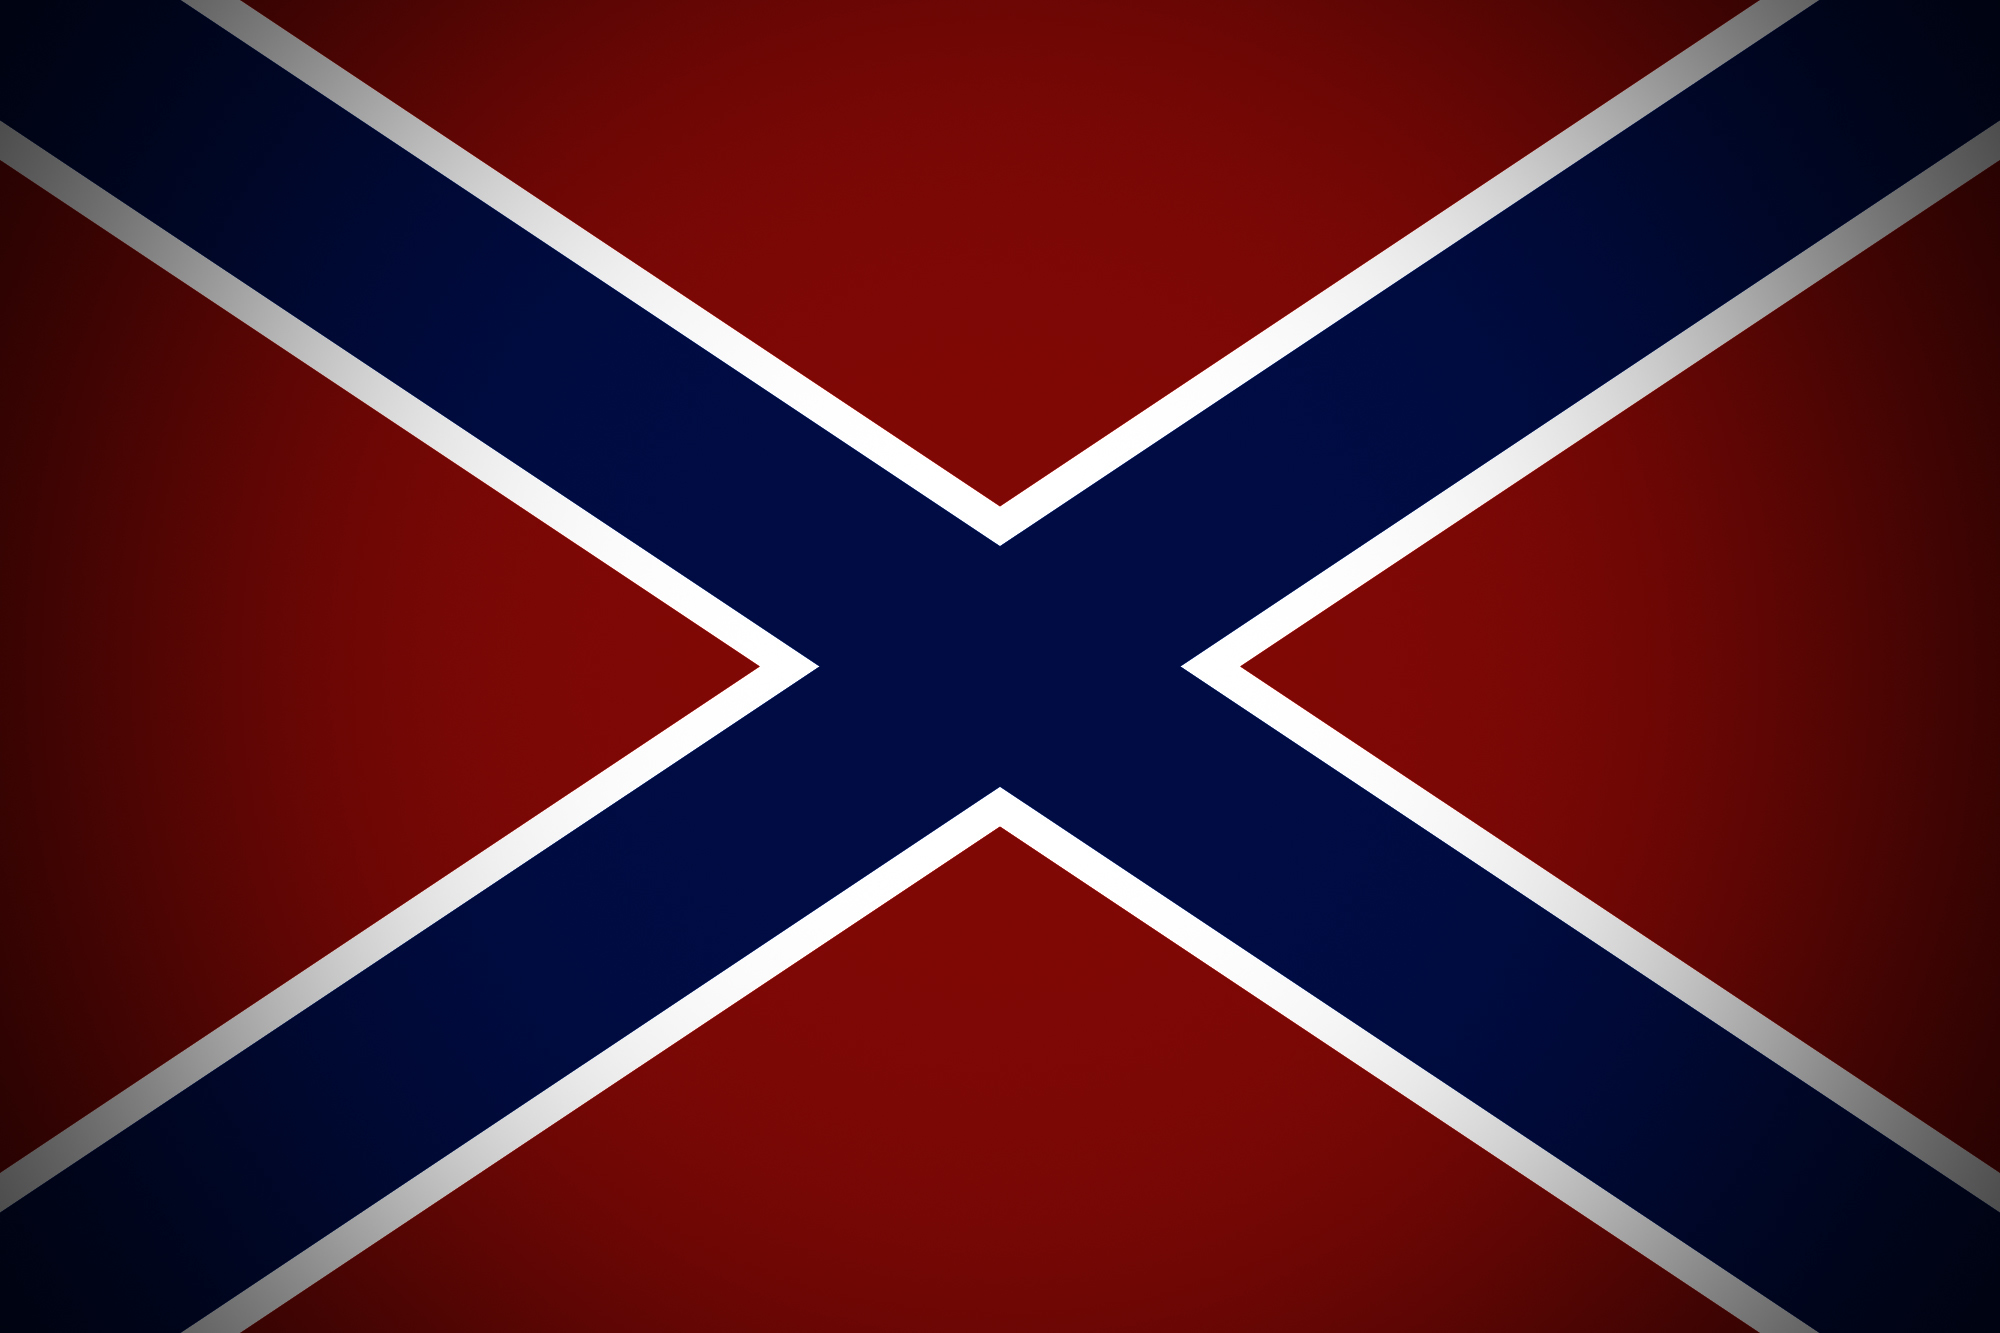 Страна с синим крестом. Флаг Новороссии 1333. Флаг Конфедерации. Флаг конфедератов и Новороссии. Флаг Конфедерации Донбасс.